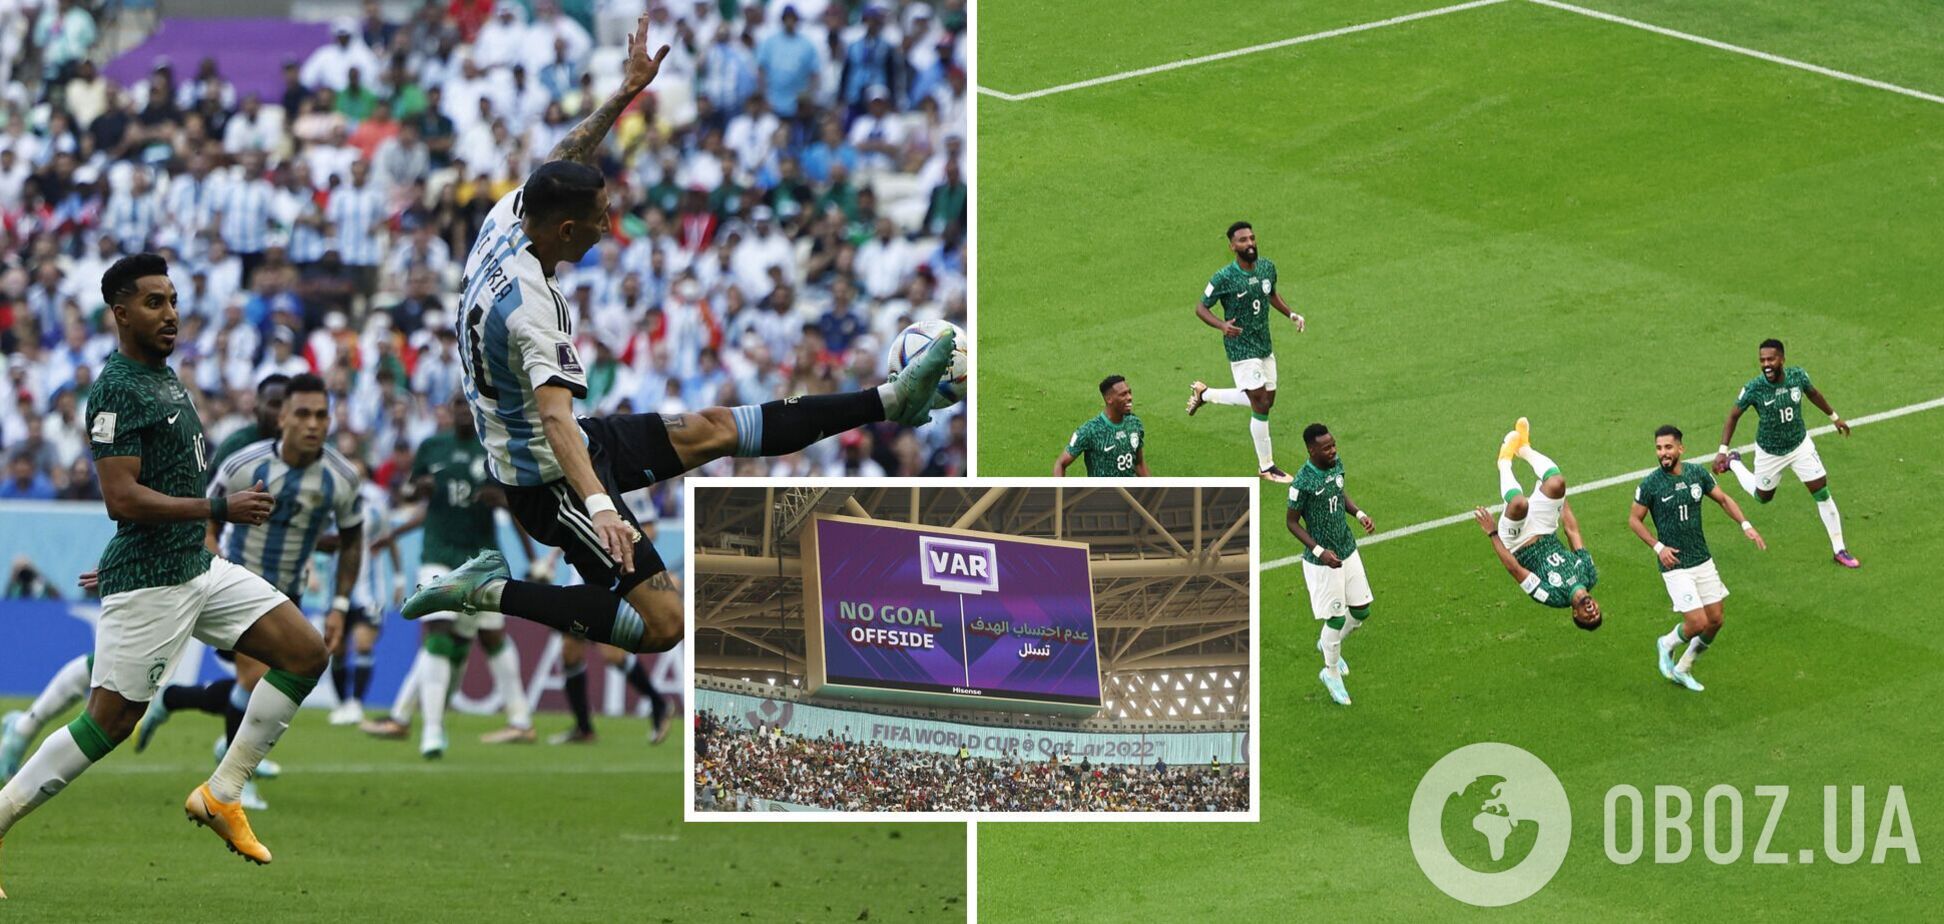 Аргентина шокировала фанатов, проиграв Саудовской Аравии на старте ЧМ-2022